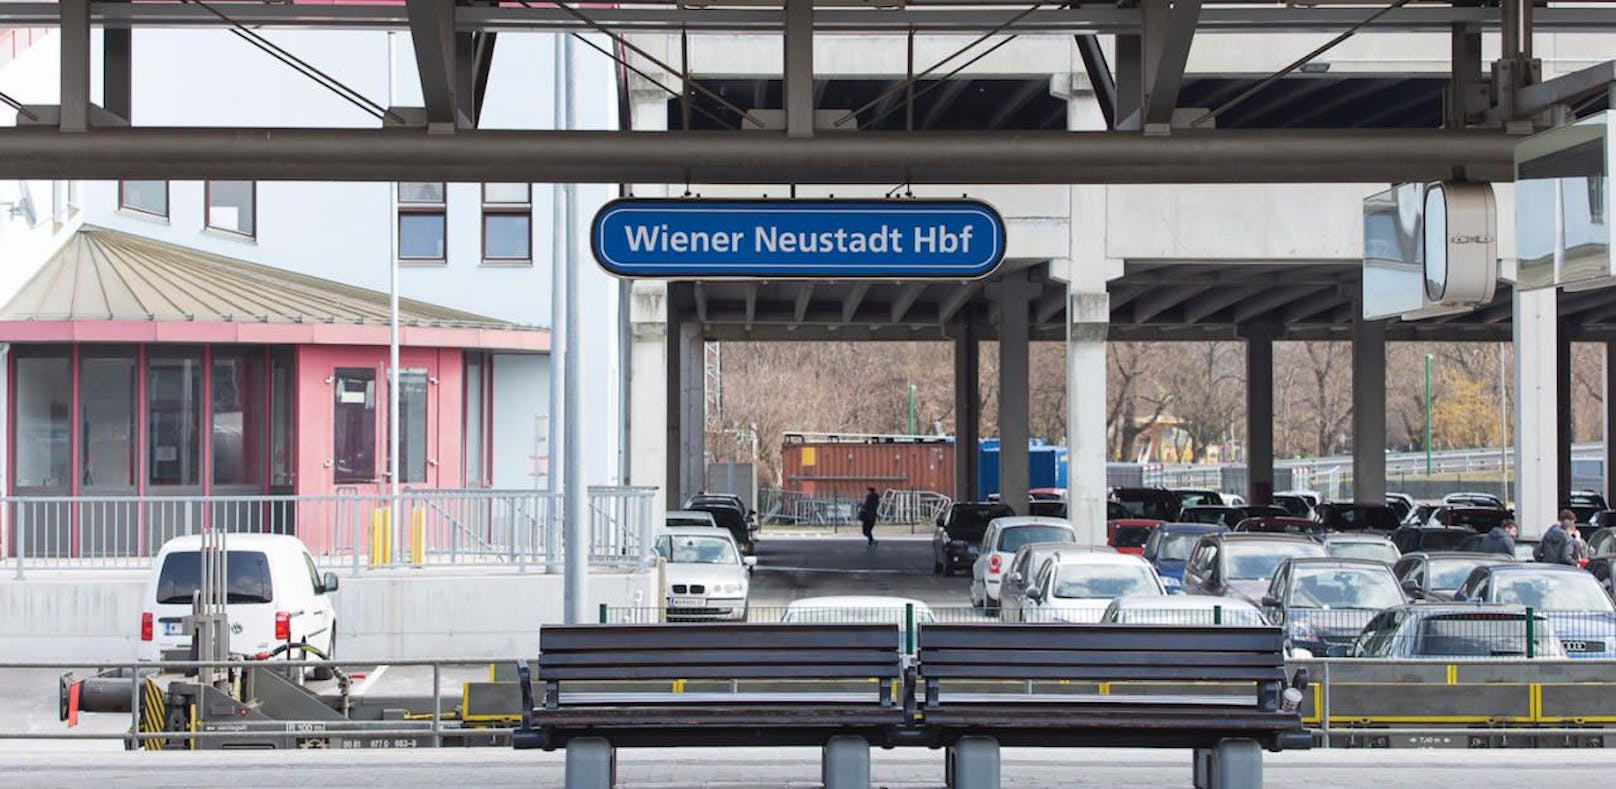 Ein Quartett soll Landsmann in Wiener Neustadt am Bahnhof überfallen haben.